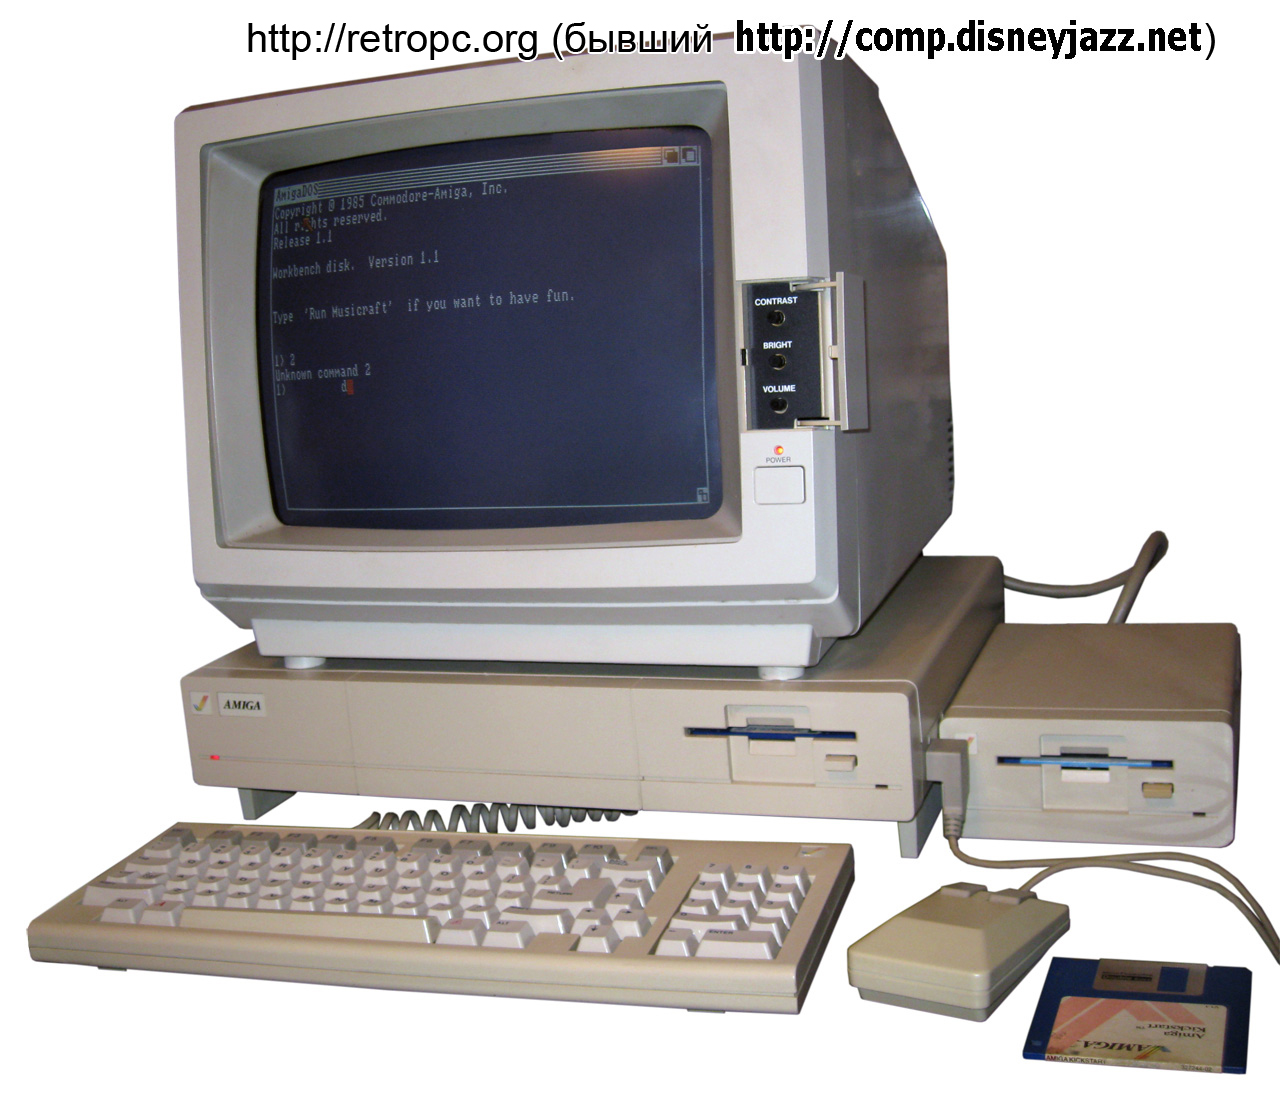 Комплект компьютера Amiga 1000 в рабочем состоянии